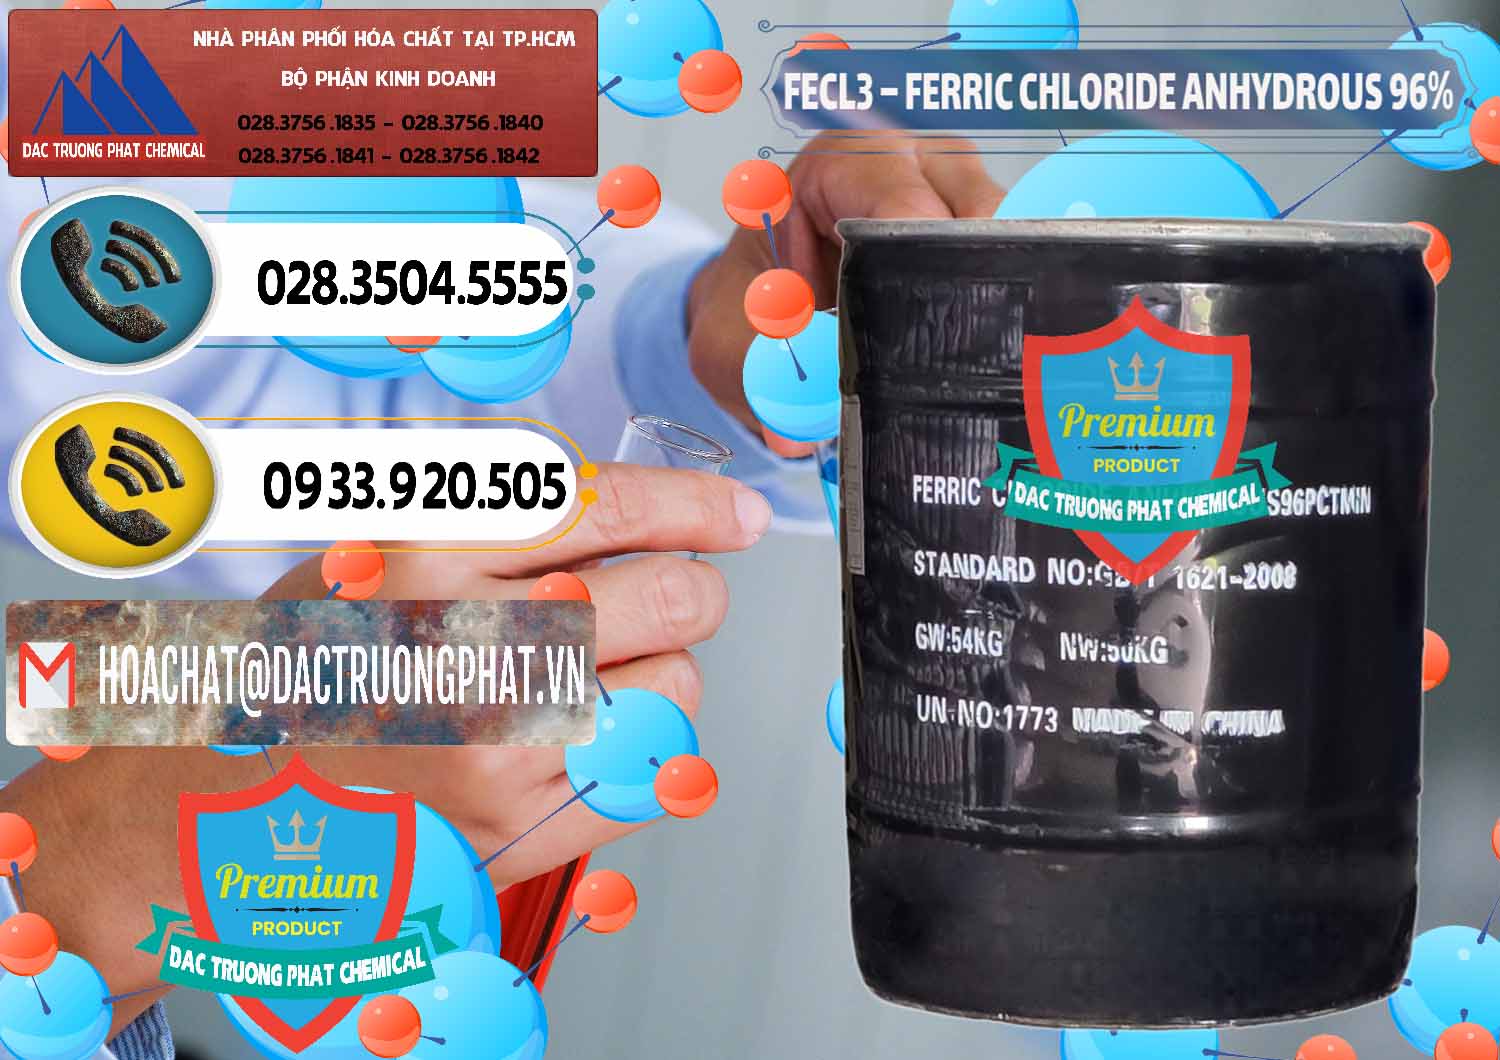 Nơi cung ứng và bán FECL3 – Ferric Chloride Anhydrous 96% Trung Quốc China - 0065 - Nơi cung cấp - nhập khẩu hóa chất tại TP.HCM - hoachatdetnhuom.vn